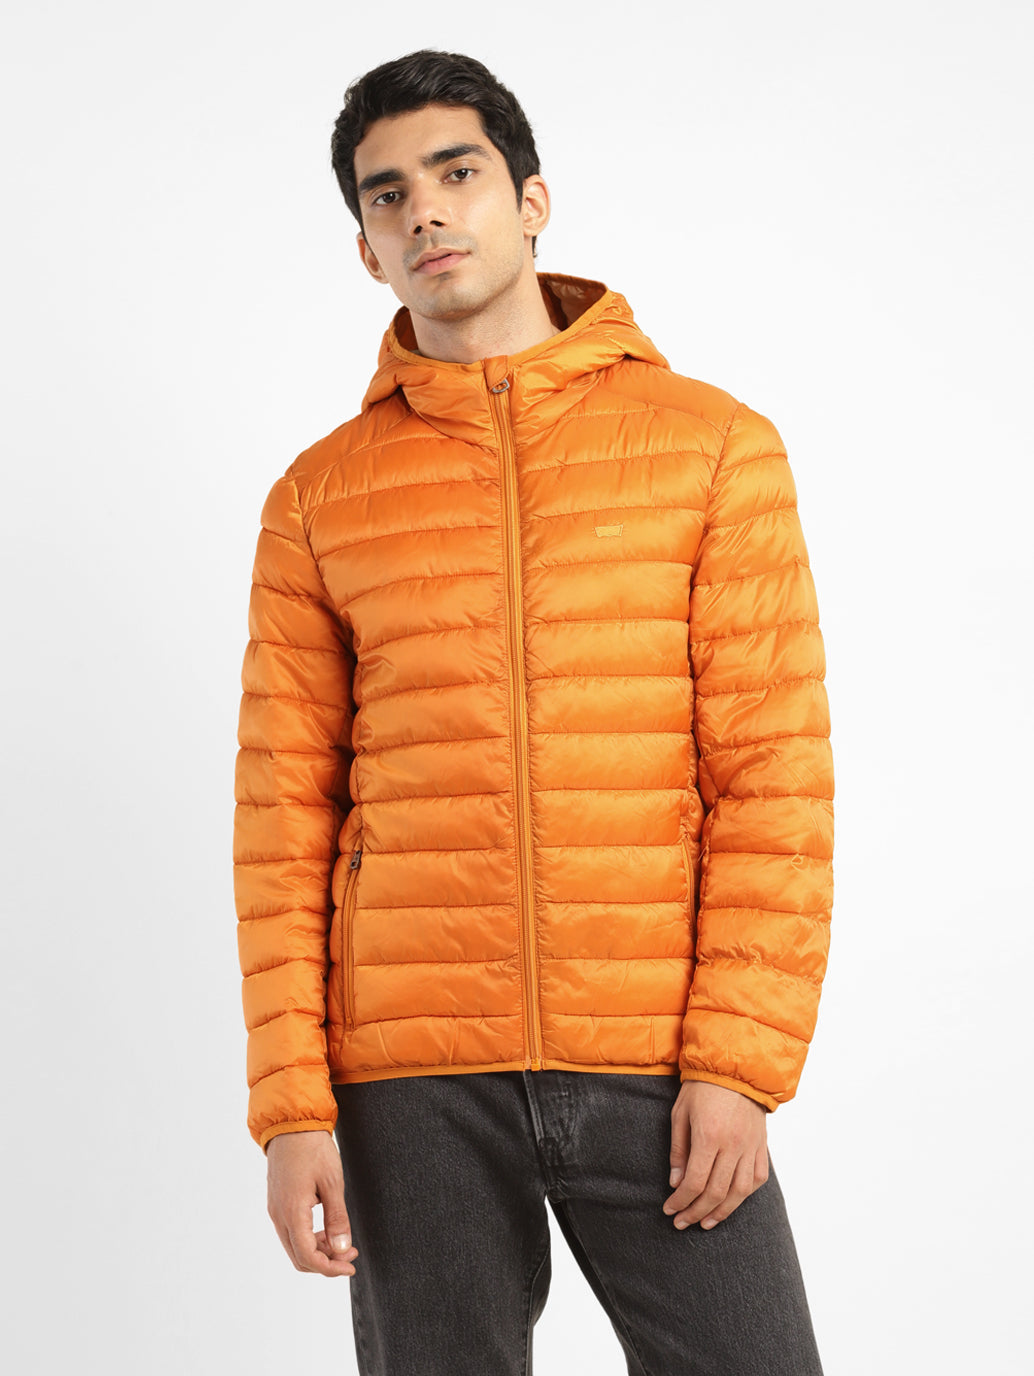 Men's Solid Orange Hooded Jacket